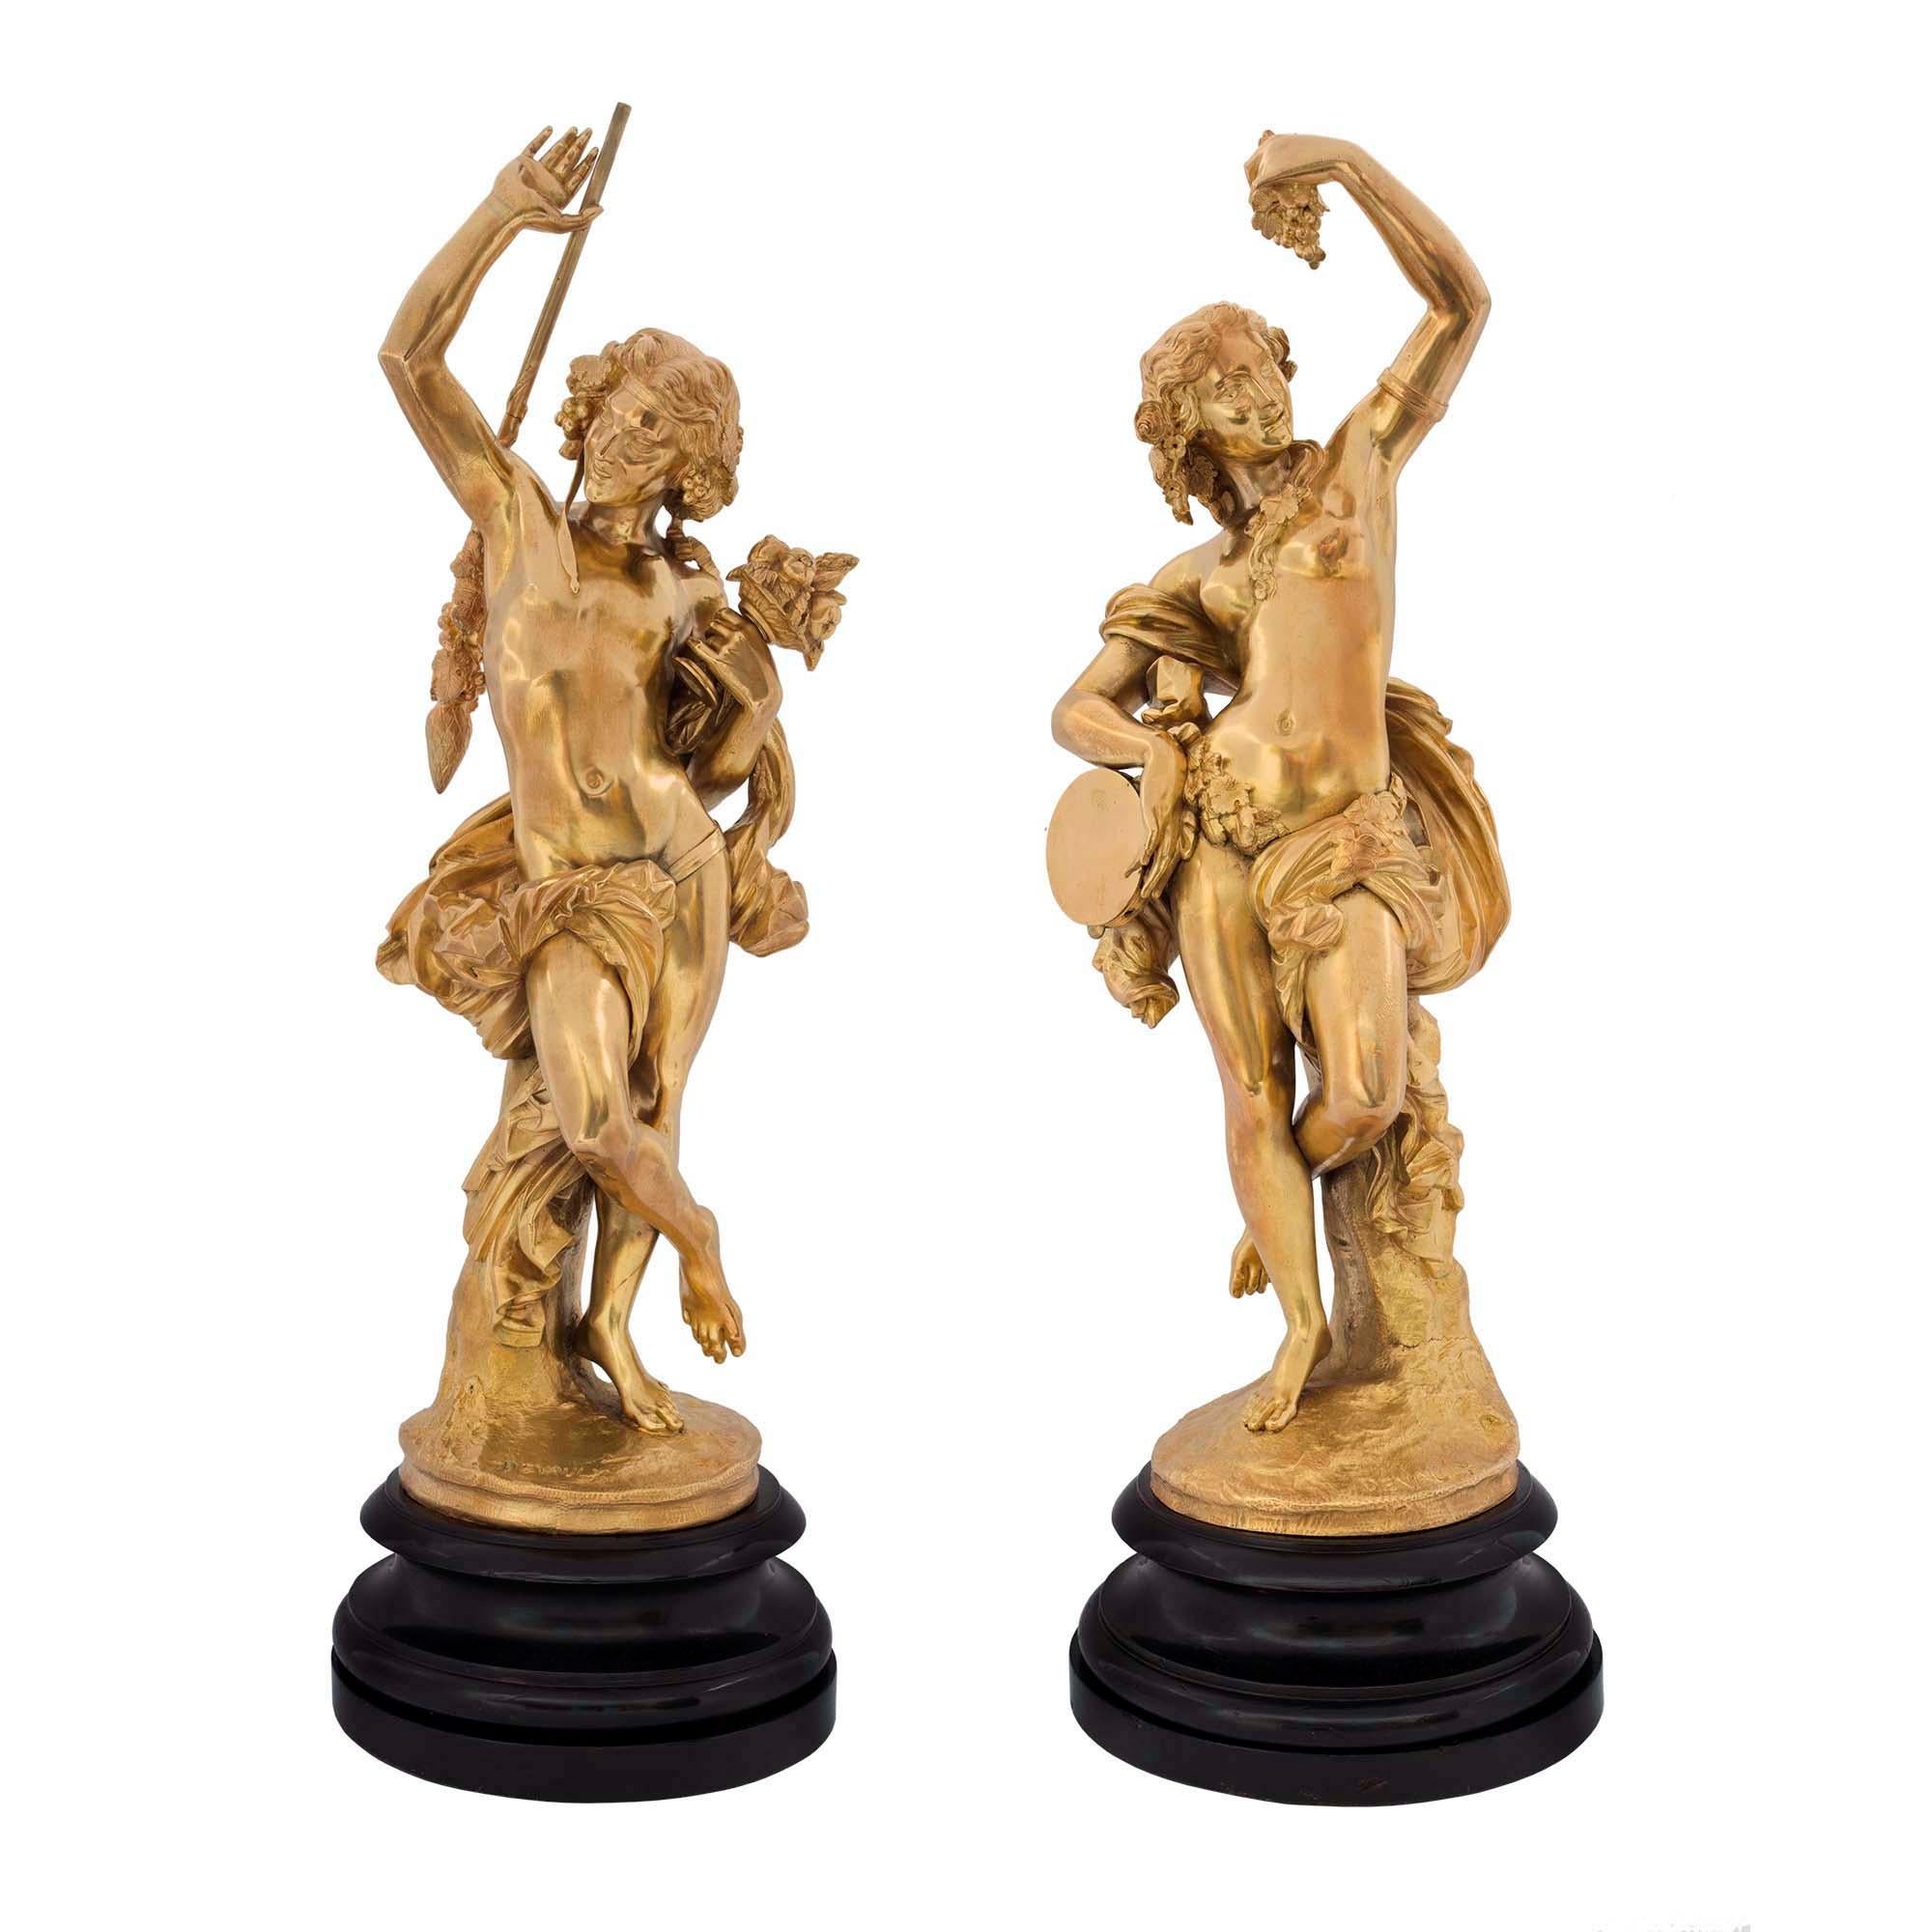 Statues figuratives festives françaises en bronze doré de style Louis XVI, signées Devaulx